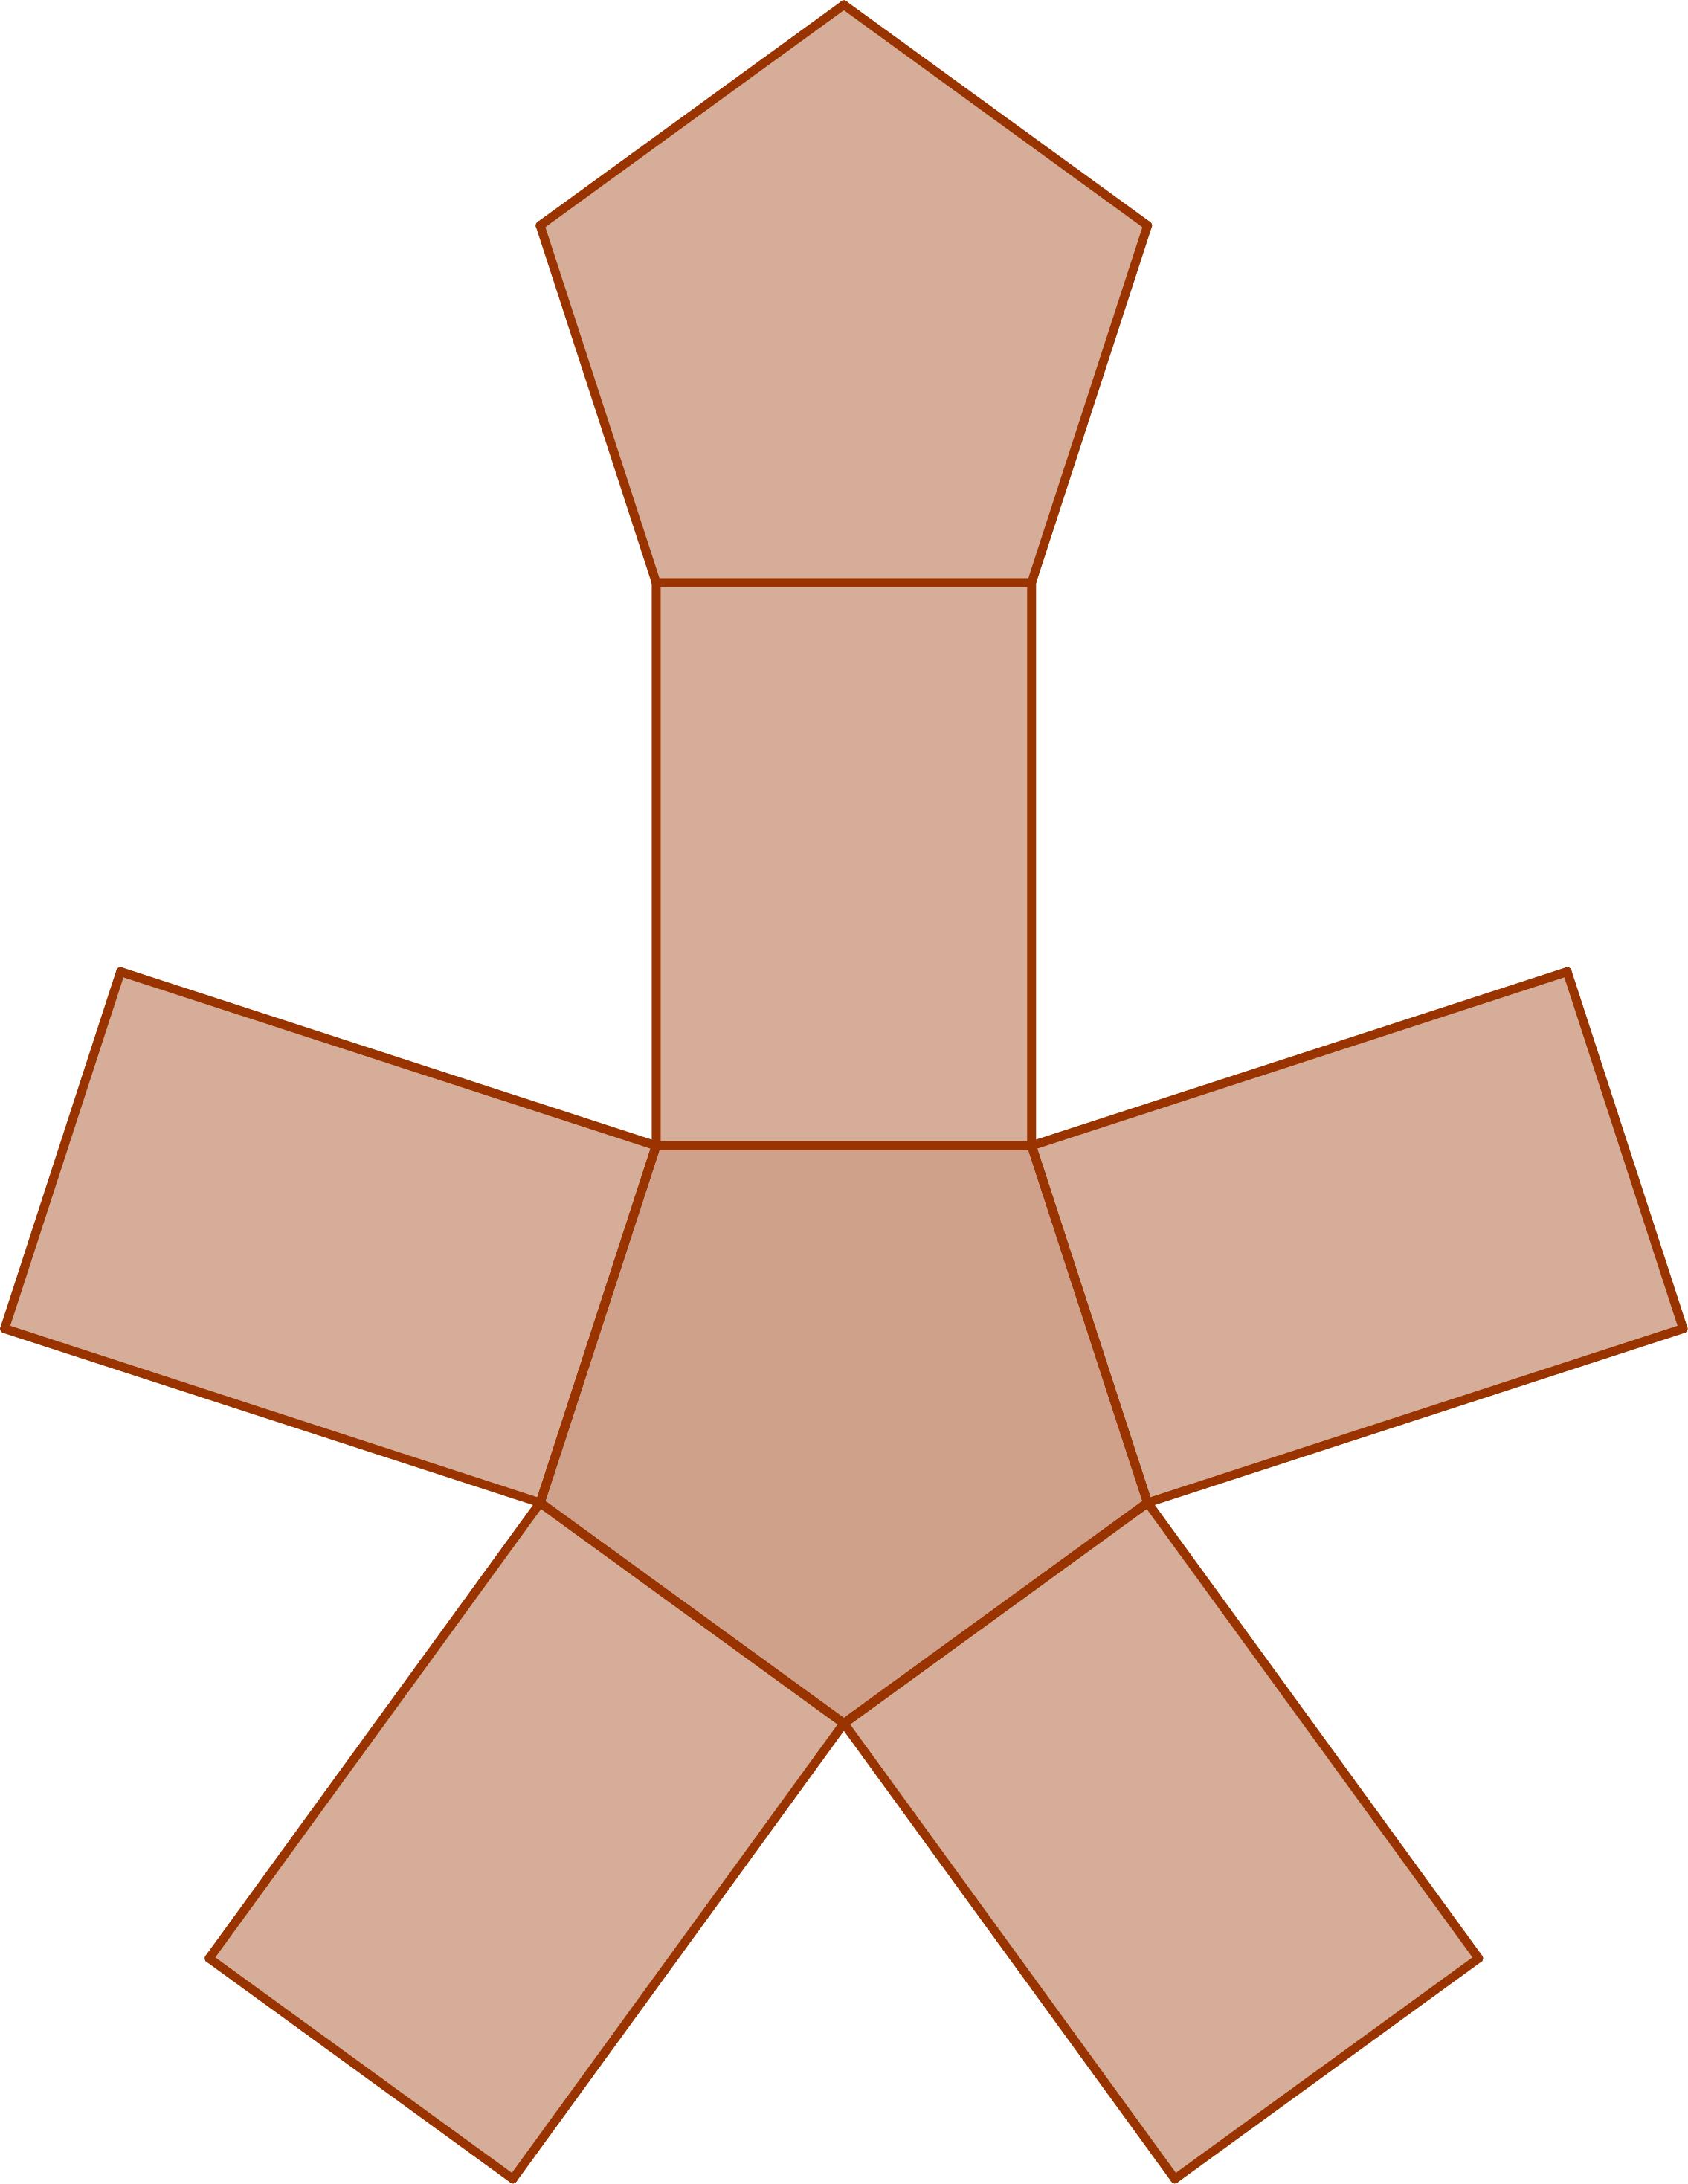 Desarrollo de un prisma pentagonal